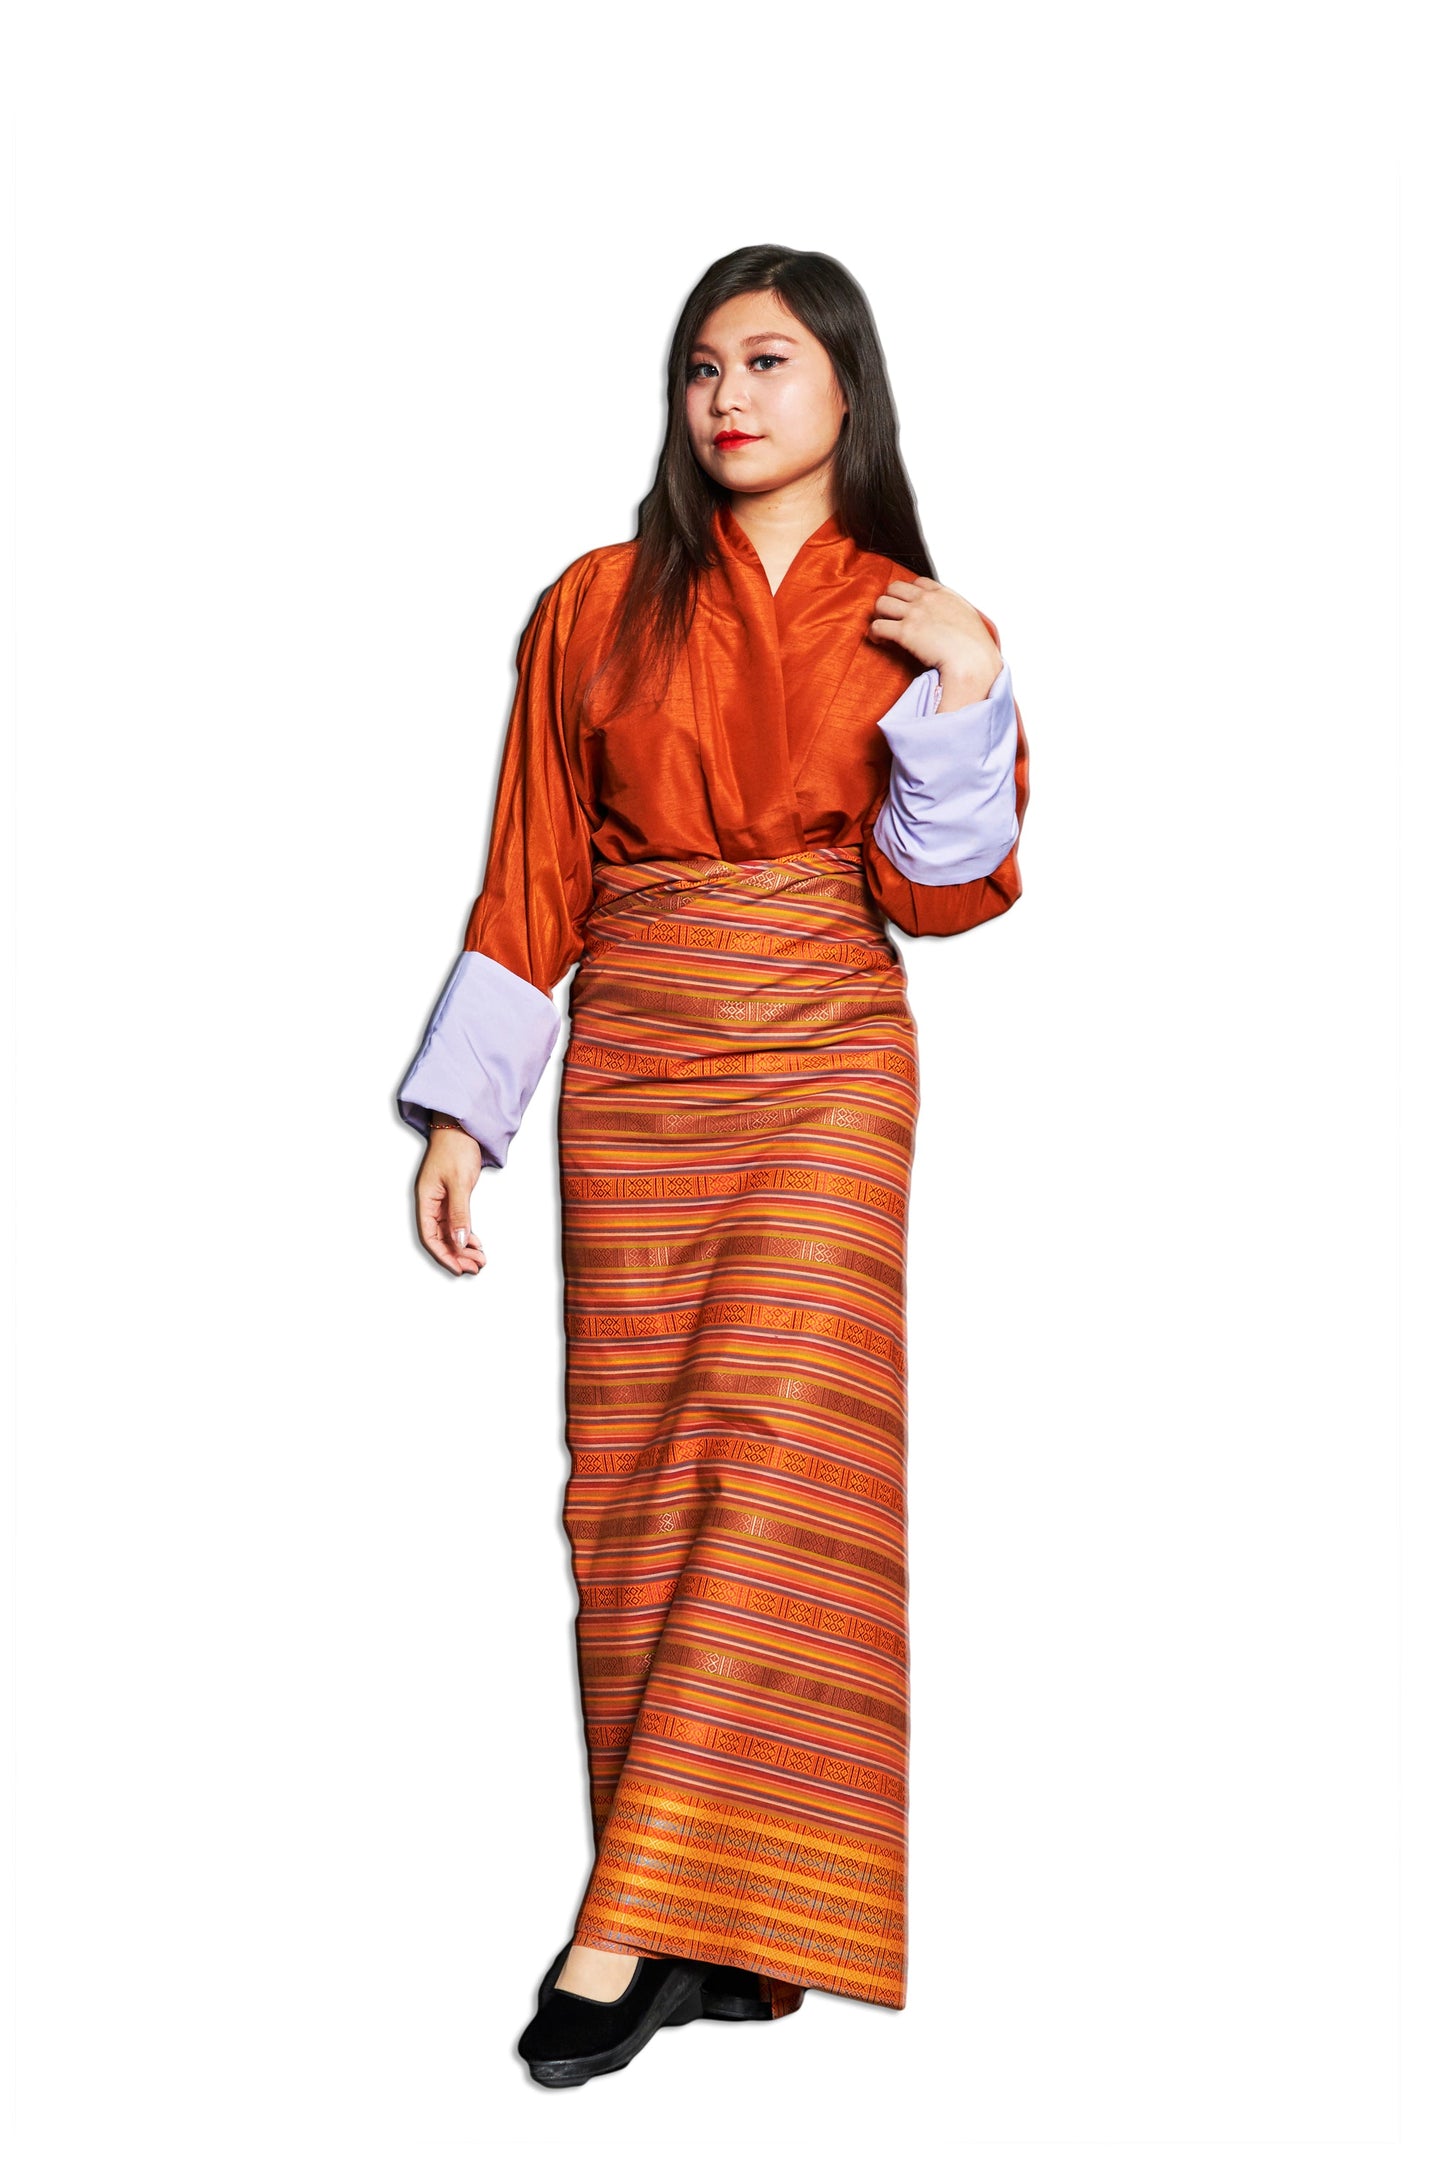 Bhutanese Female N03